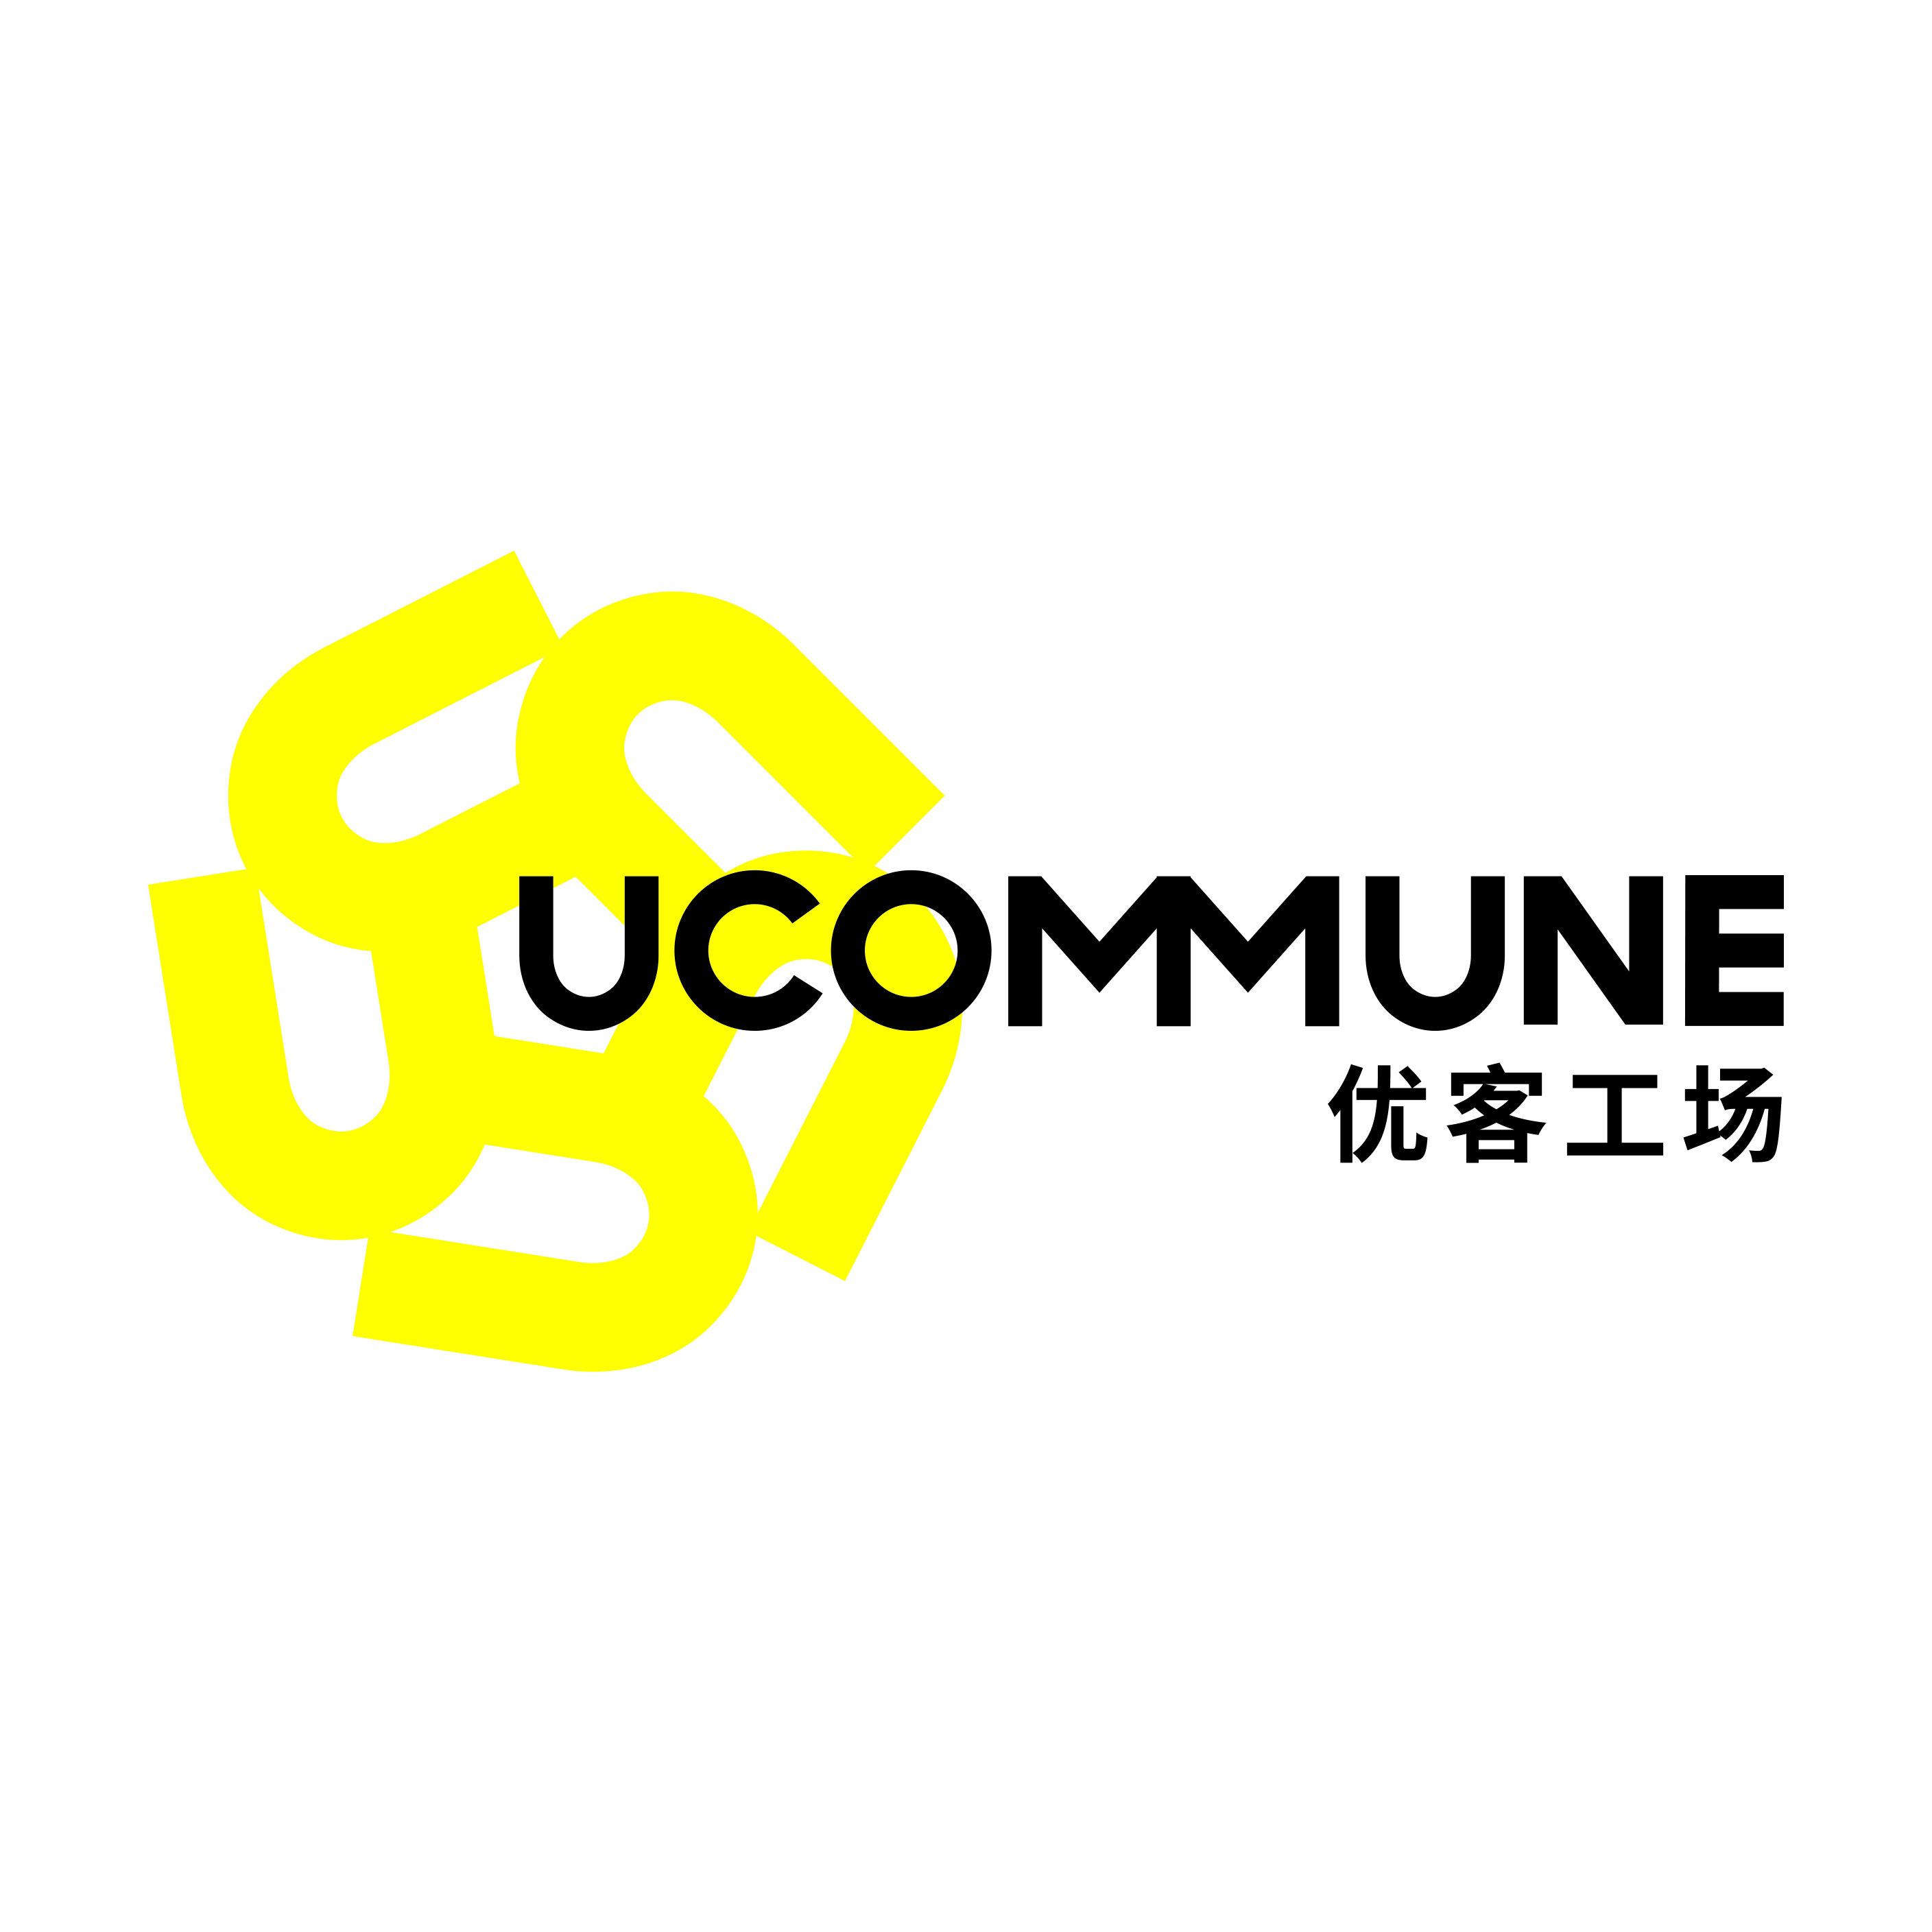 Logo ucommune